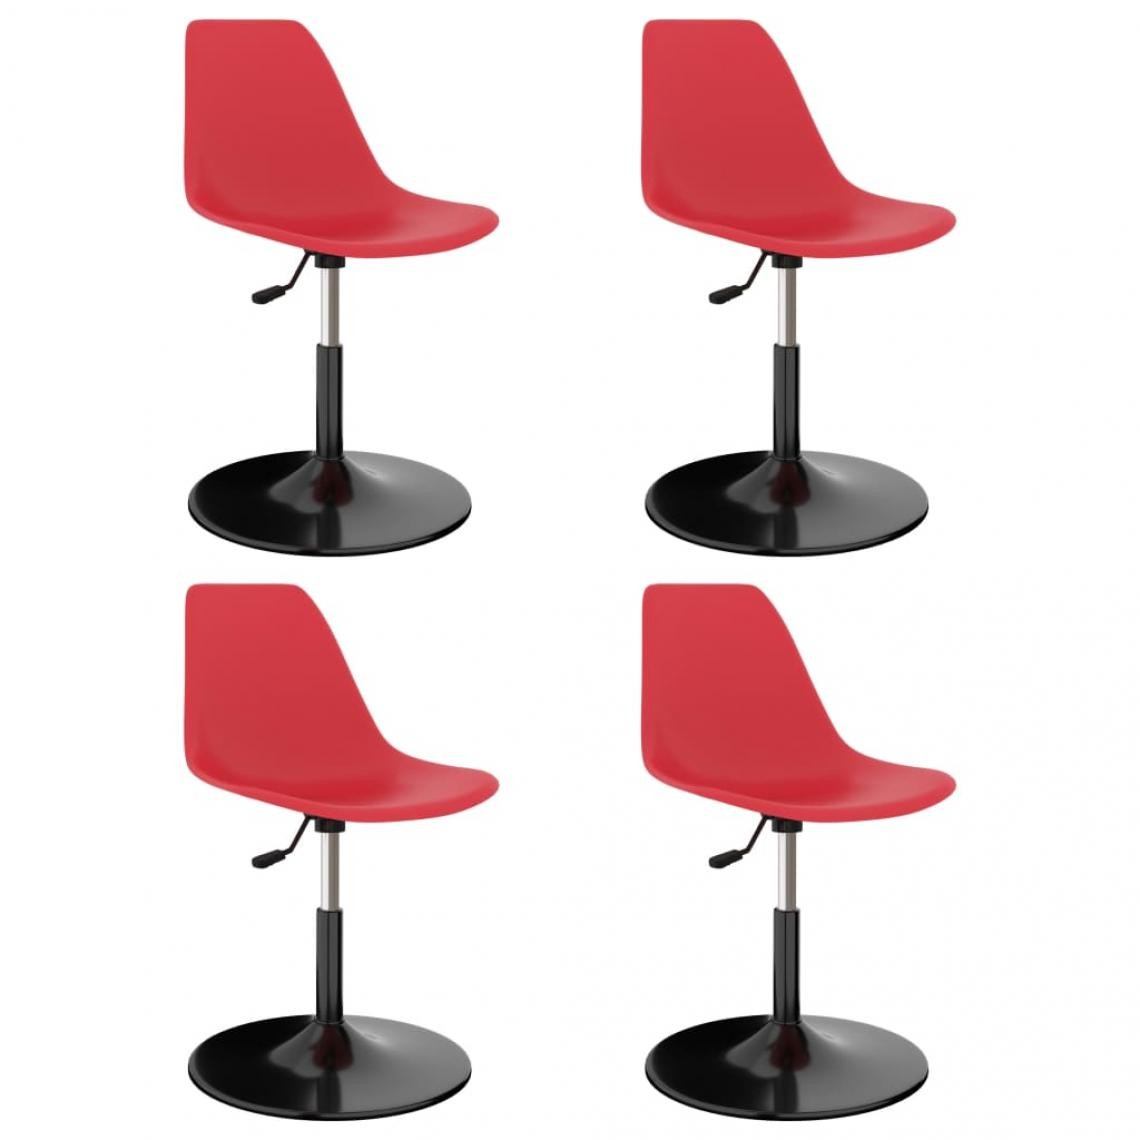 Decoshop26 - Lot de 4 chaises de salle à manger cuisine pivotantes design moderne polypropylène rouge CDS021898 - Chaises